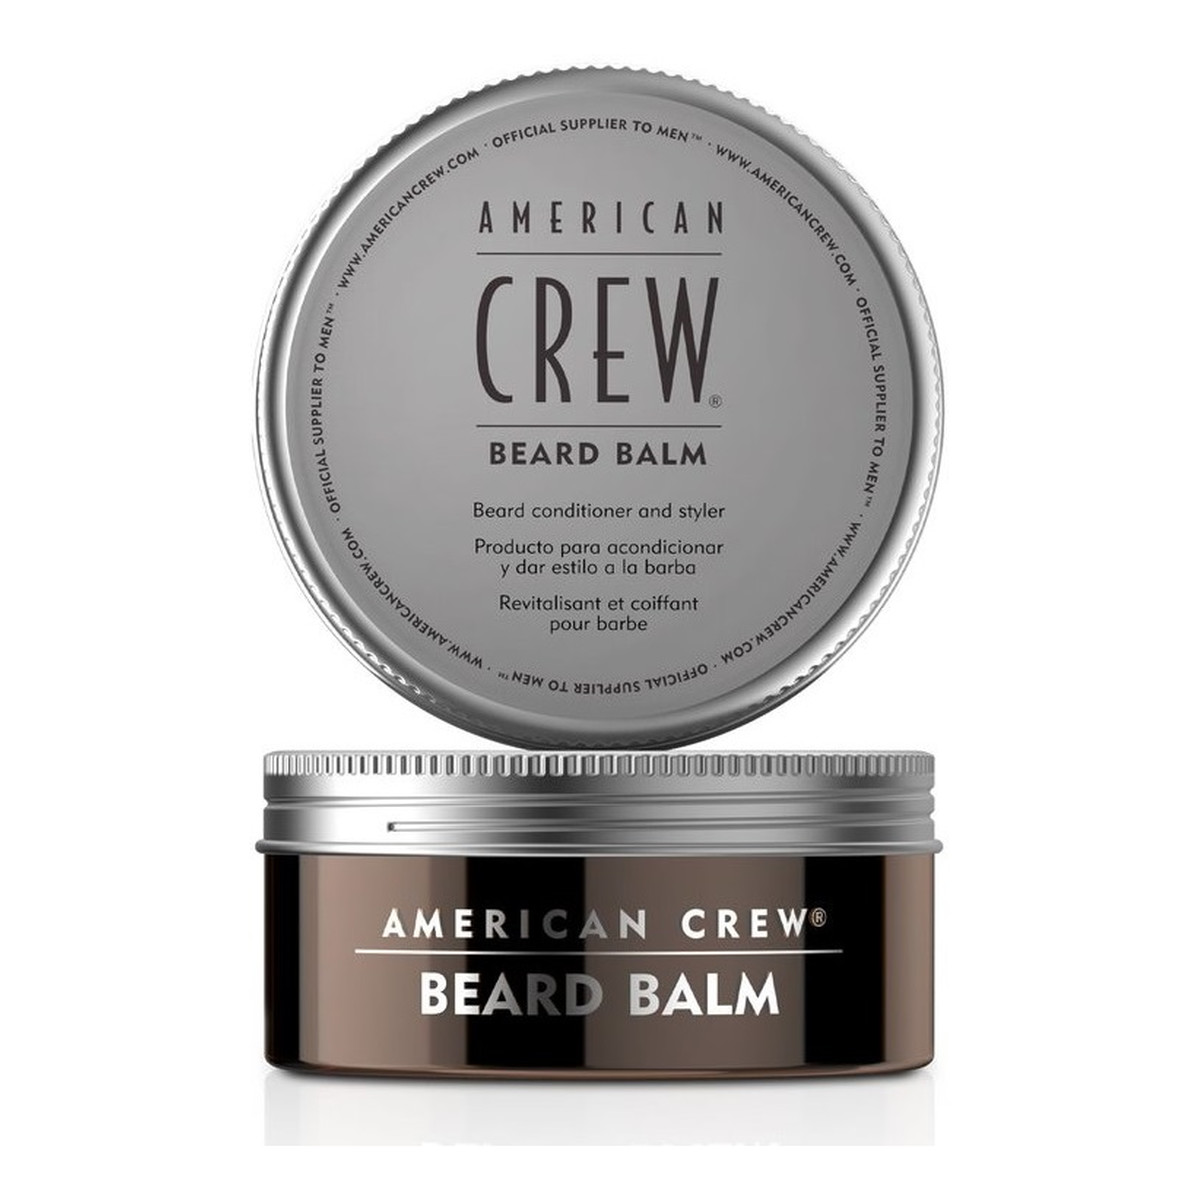 American Crew Beard Balm Balsam do pielęgnacji i stylizacji brody 60g